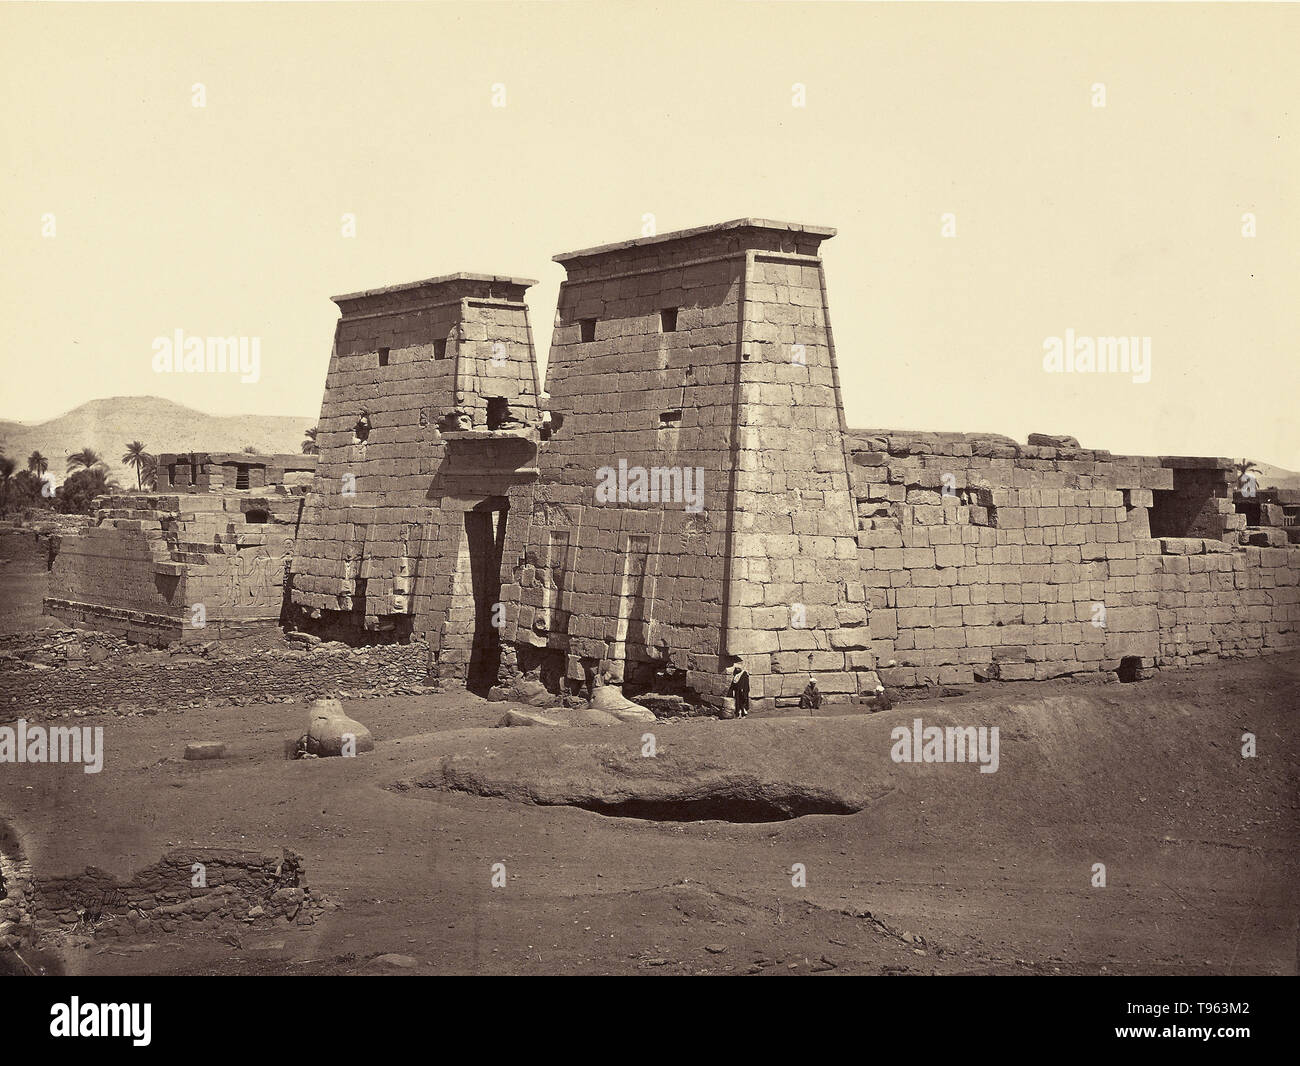 Der Totentempel von Ramses III. in Medinet Habu, eine wichtige neue Königreich Zeitraum Struktur in der West Bank von Luxor in Ägypten, 1872. Felix Bonfils (Französisch, 1831 - 1885). Eiklar Silber drucken. Stockfoto